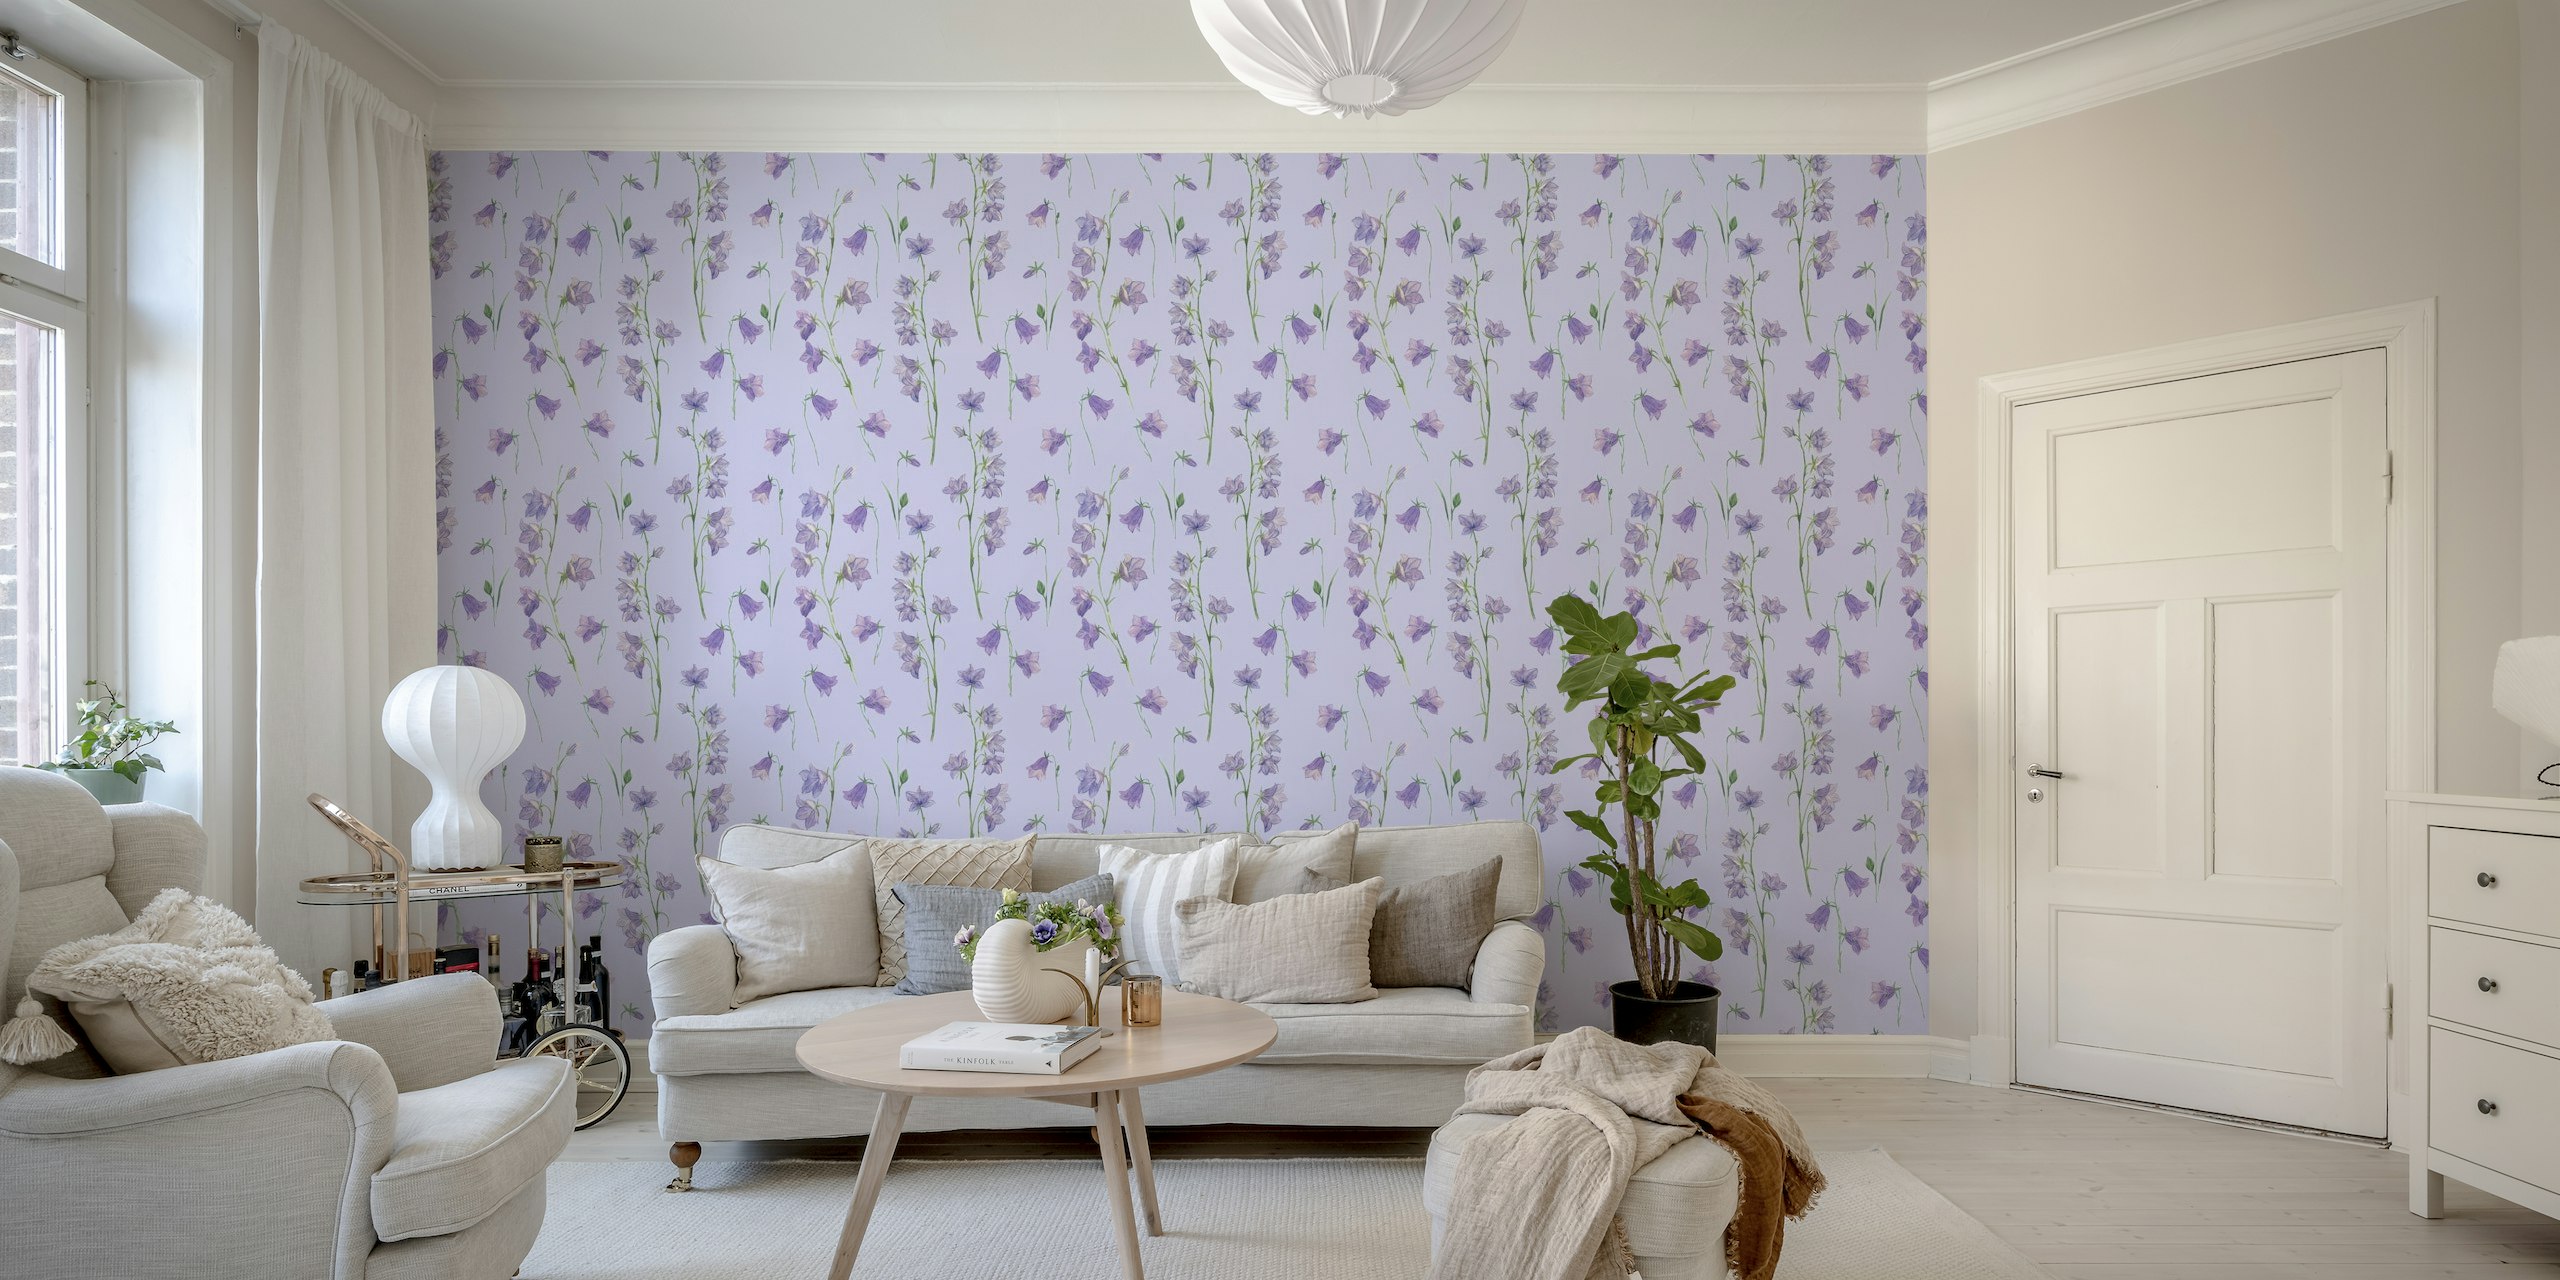 Bluebells on pale violet wallpaper